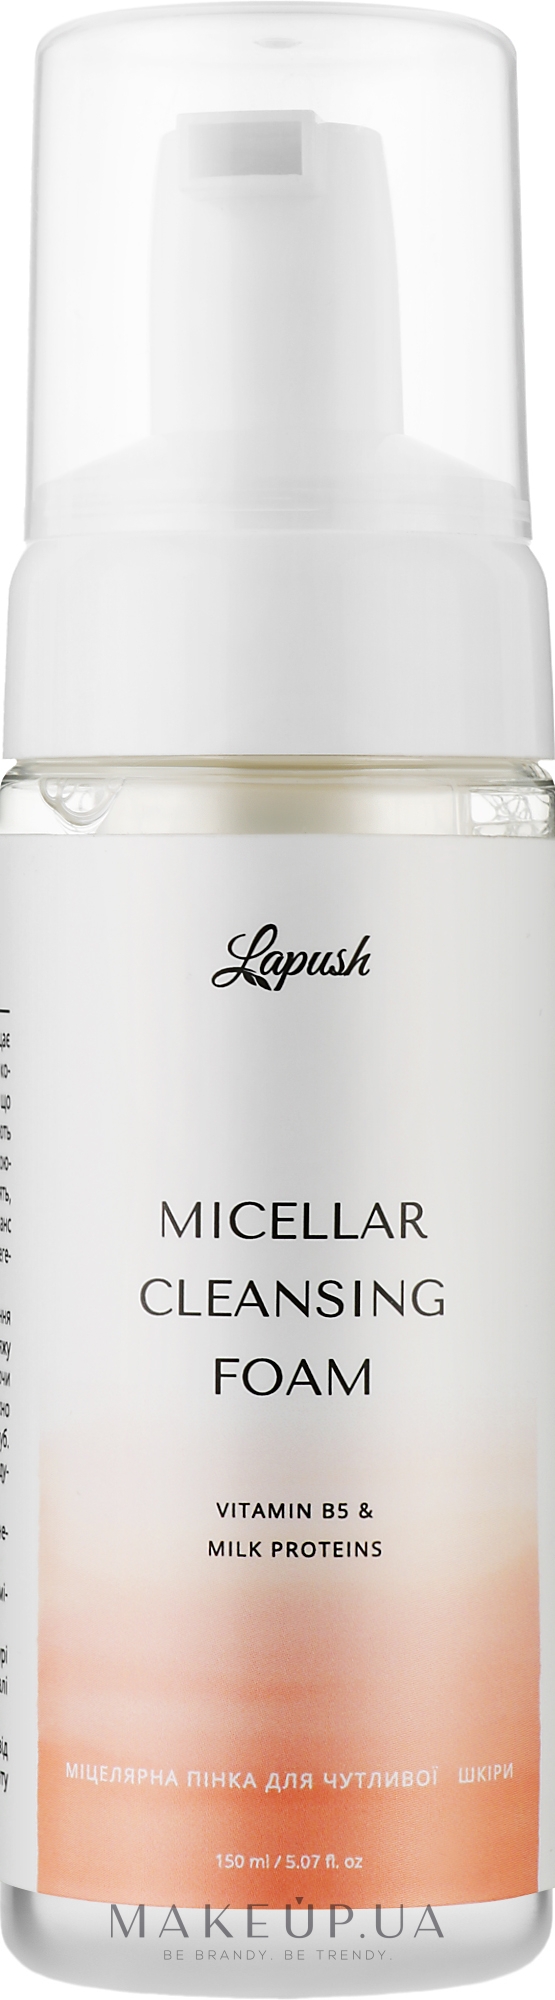 Мицеллярная пенка для чувствительной кожи с витамином В5 и молочными протеинами - Lapush Micellar Cleansing Foam Vitamin B5 & Milk Proteins — фото 150ml